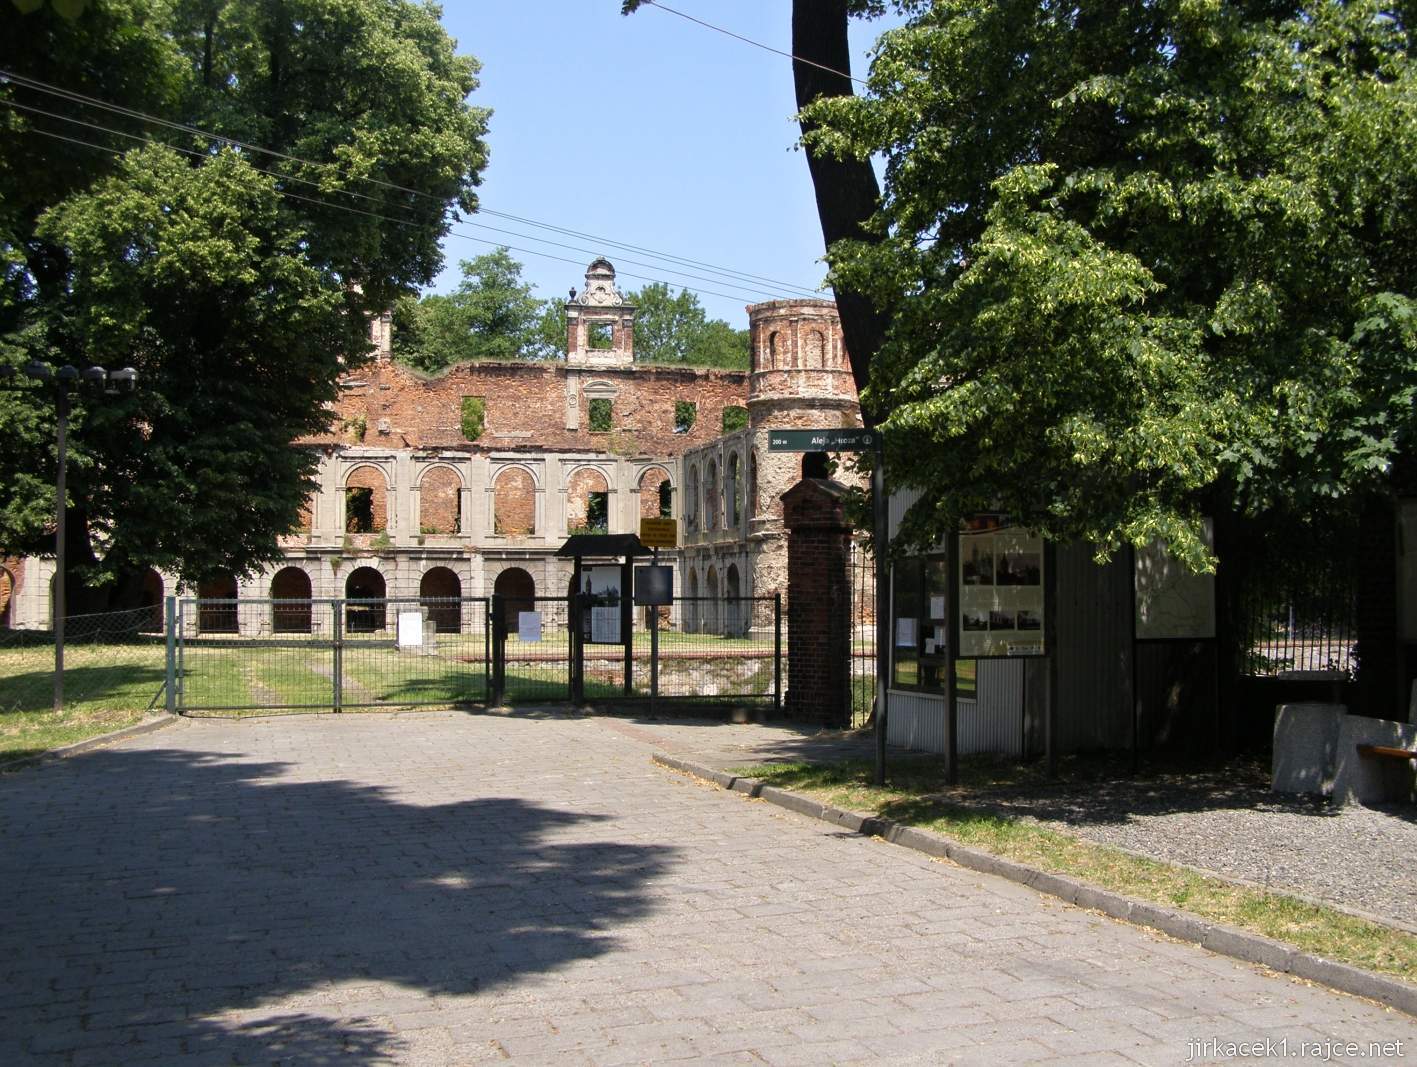 Tworków - ruiny zámku 02 - pokladna, brána a část zámku